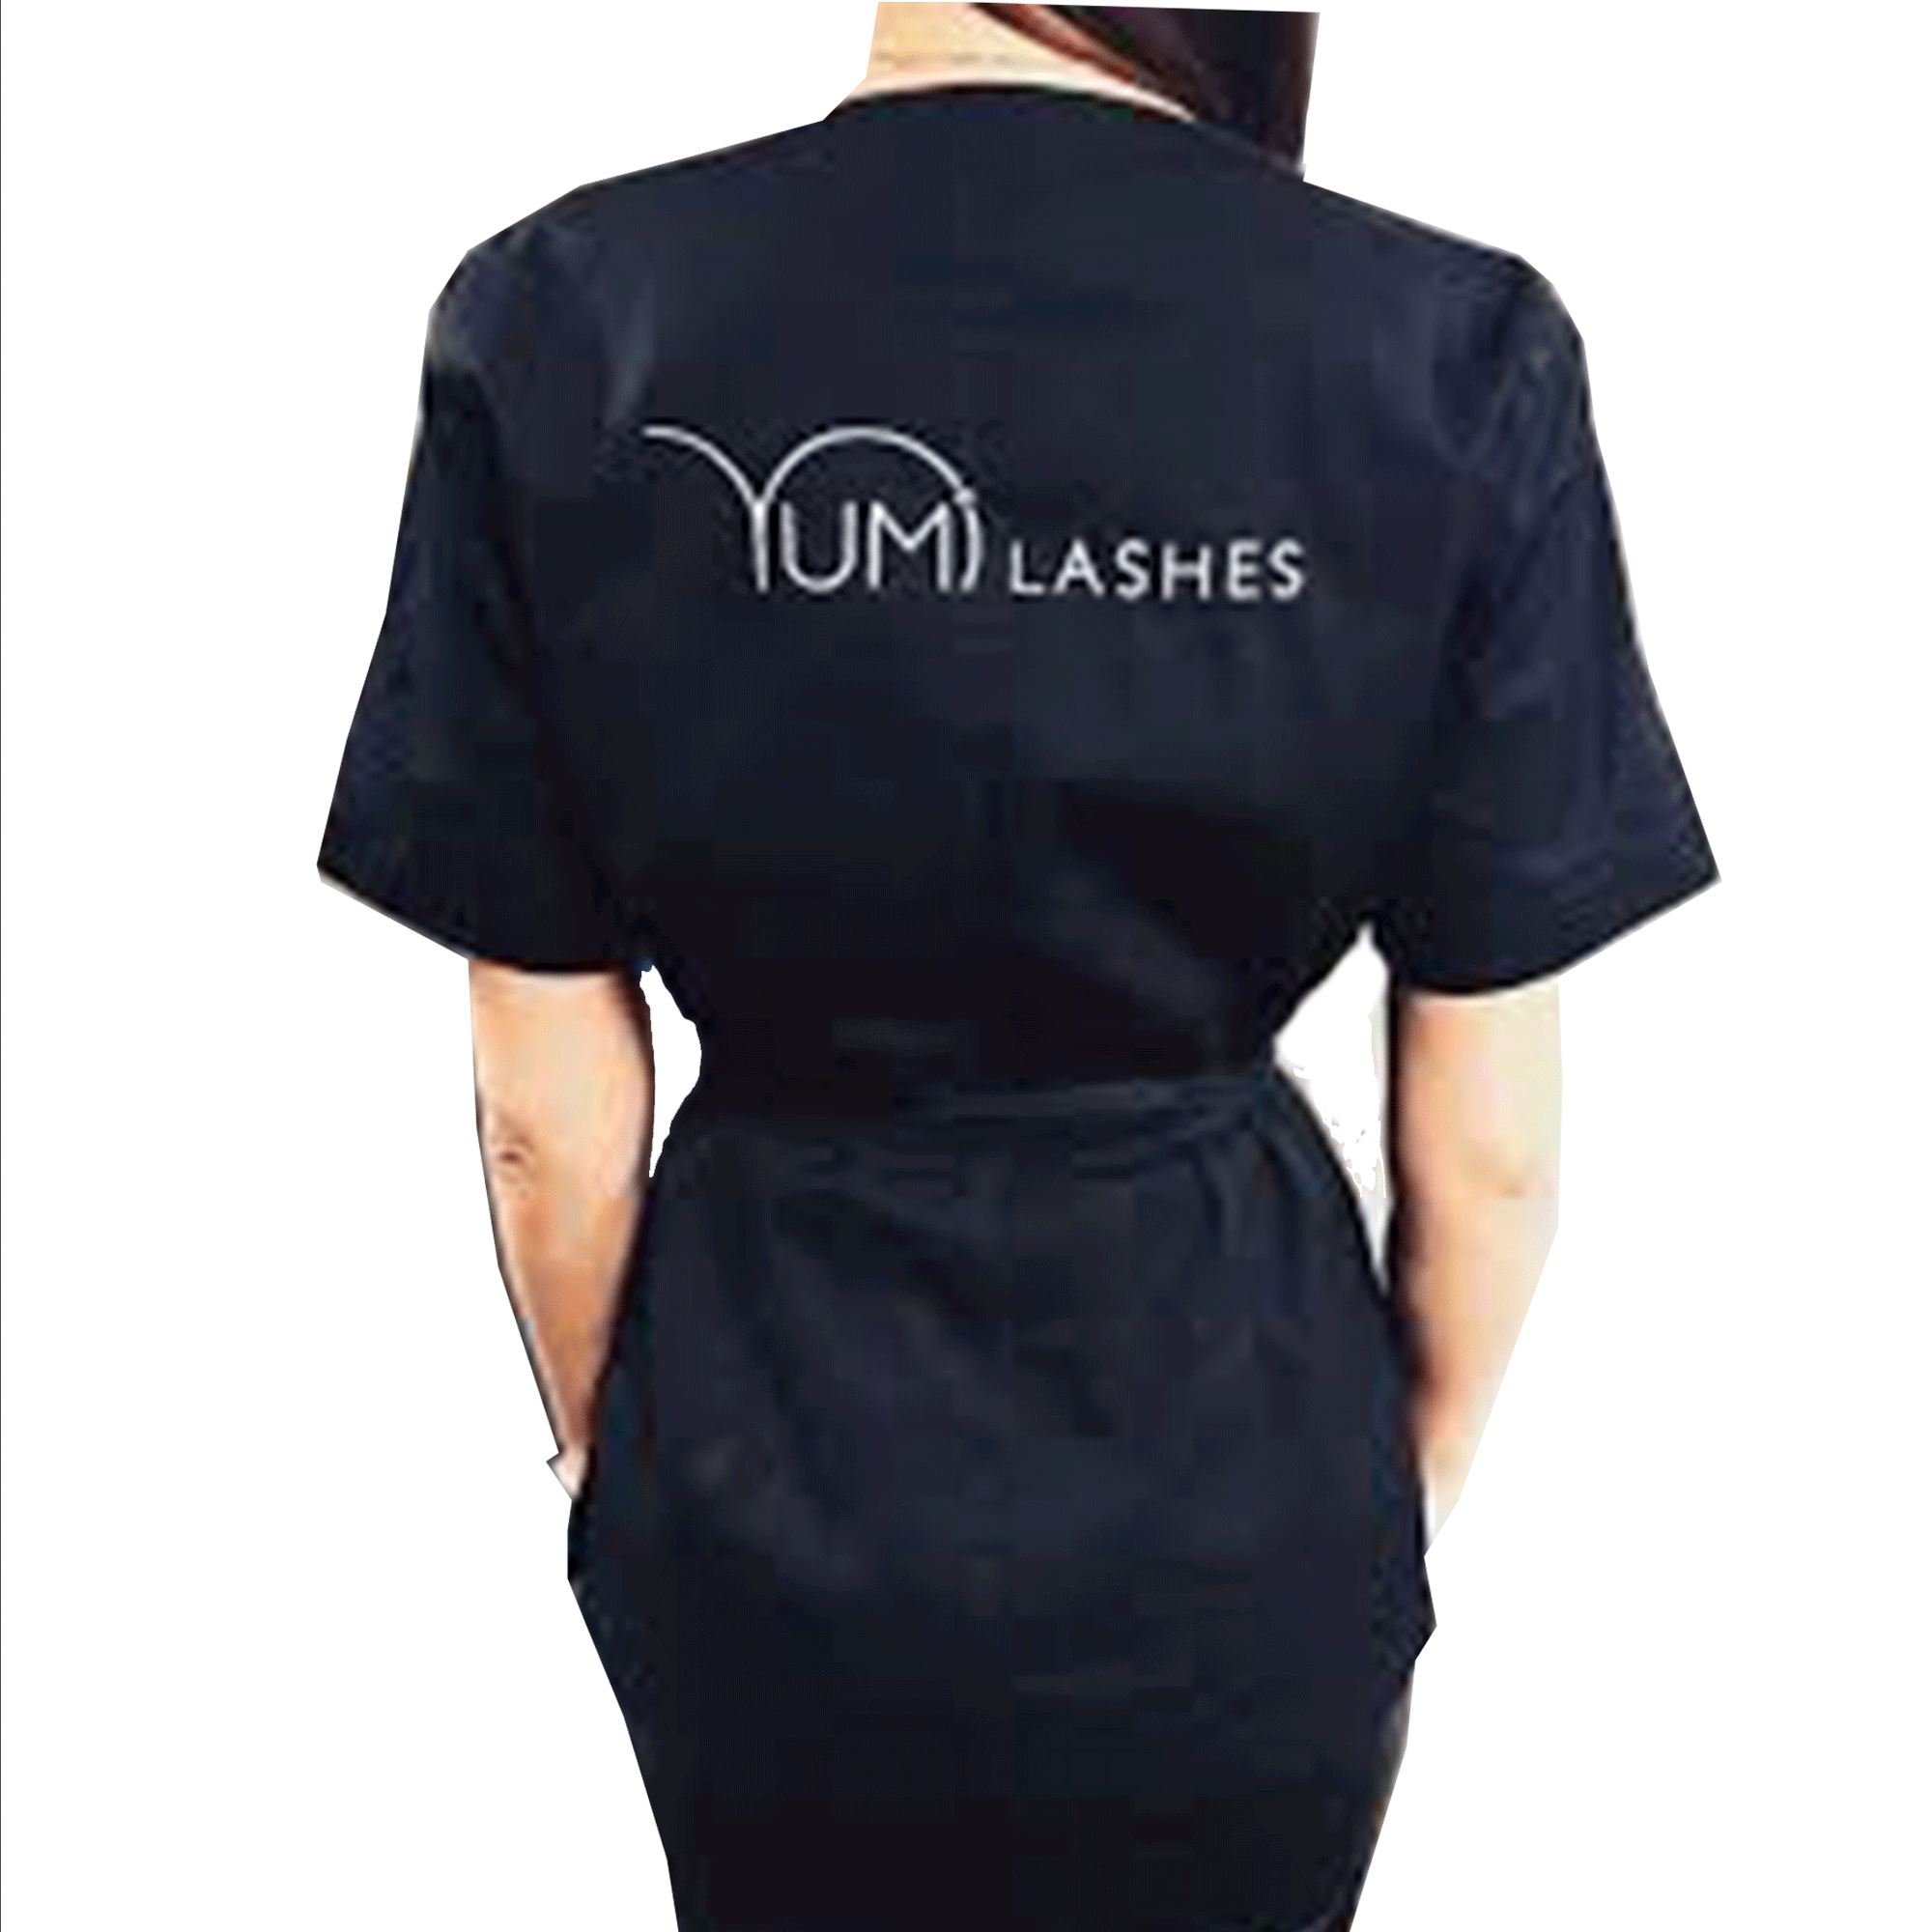 Yumi Lashes Black Uniform